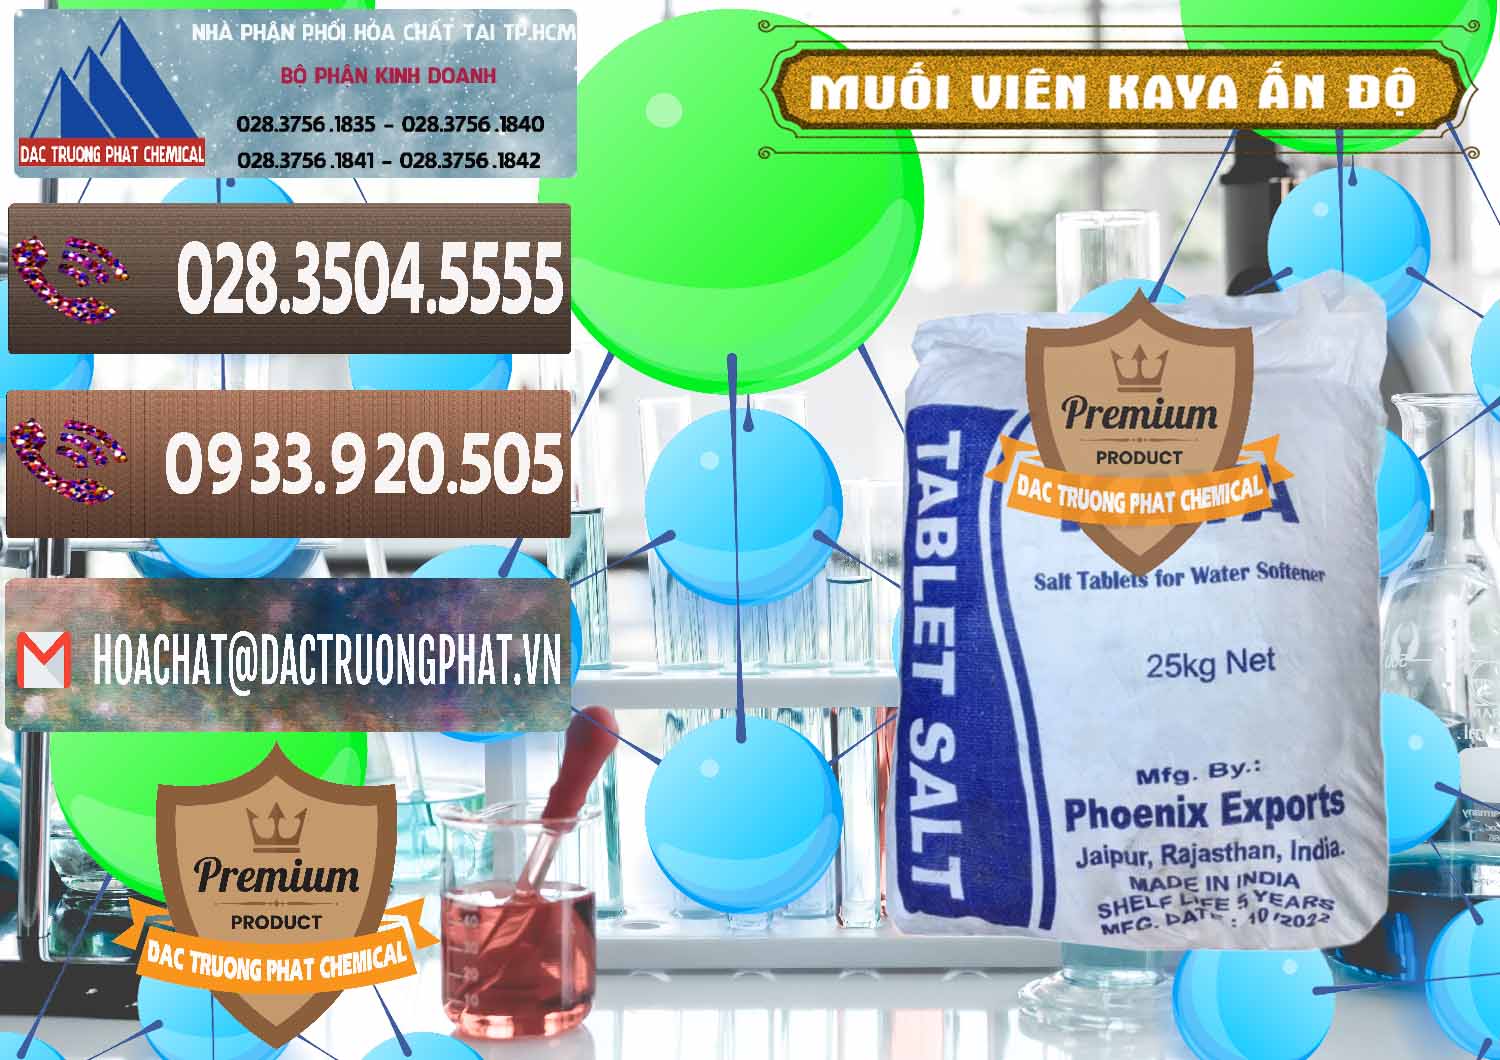 Công ty chuyên bán - cung cấp Muối NaCL – Sodium Chloride Dạng Viên Tablets Kaya Ấn Độ India - 0368 - Cty chuyên kinh doanh và phân phối hóa chất tại TP.HCM - hoachatviet.net